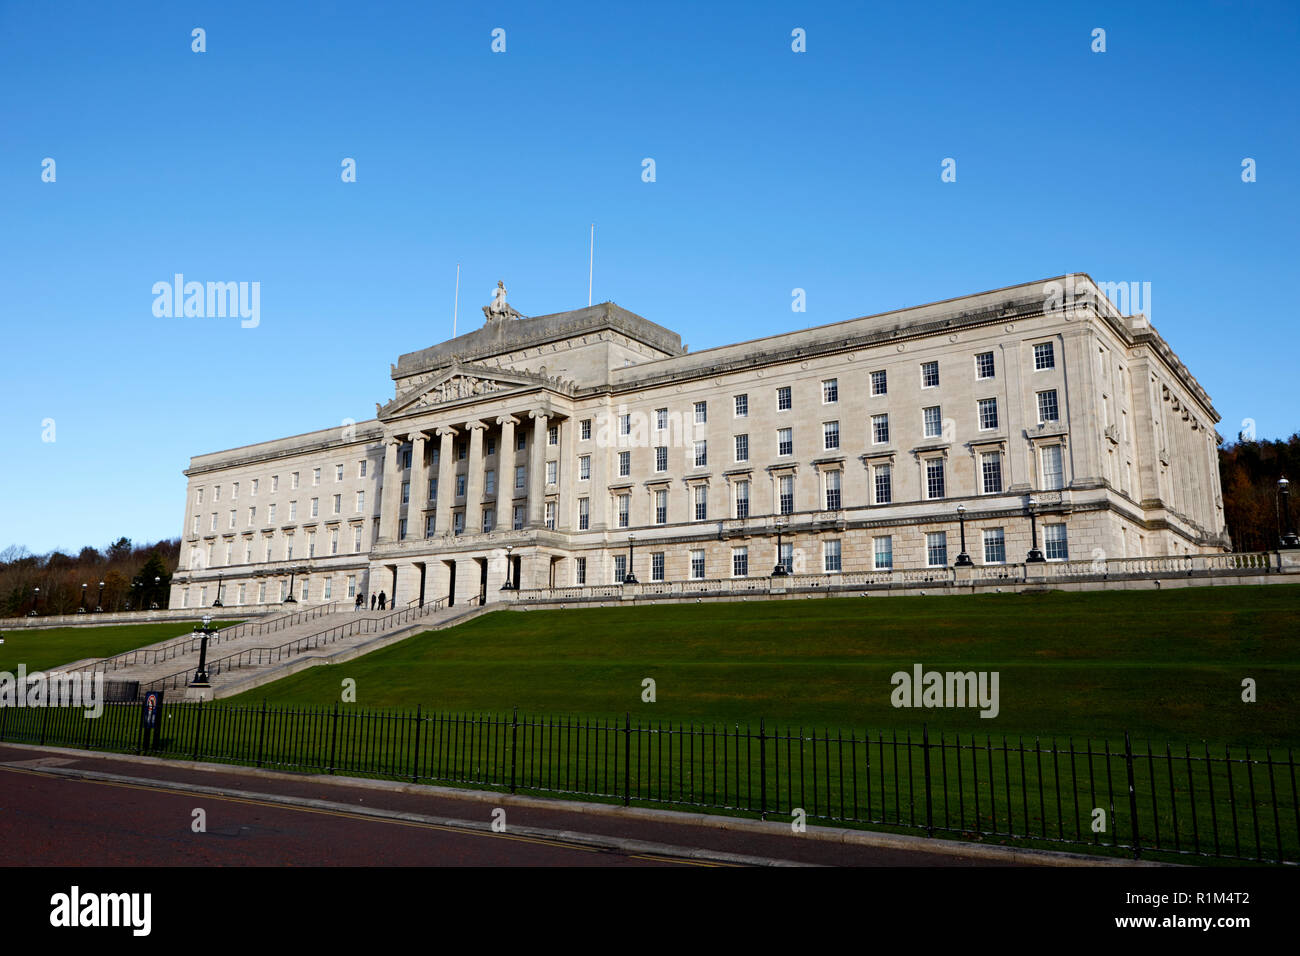 Édifices du Parlement Stormont belfast Irlande du Nord Banque D'Images